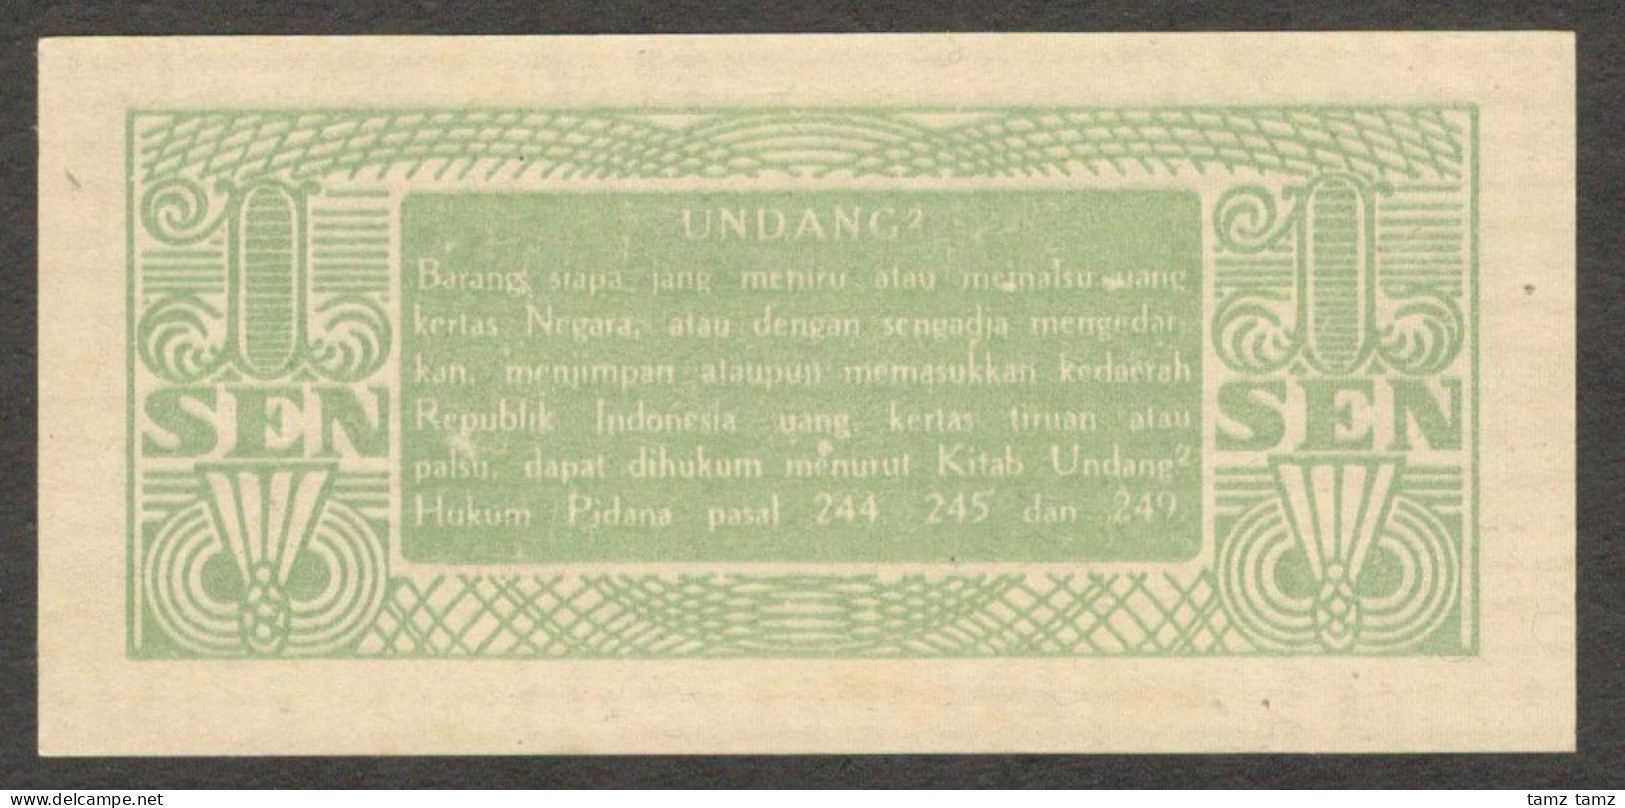 Oeang Republik Indonesia (ORI) 1 Sen 1945 P-13 UNC - Indonesien